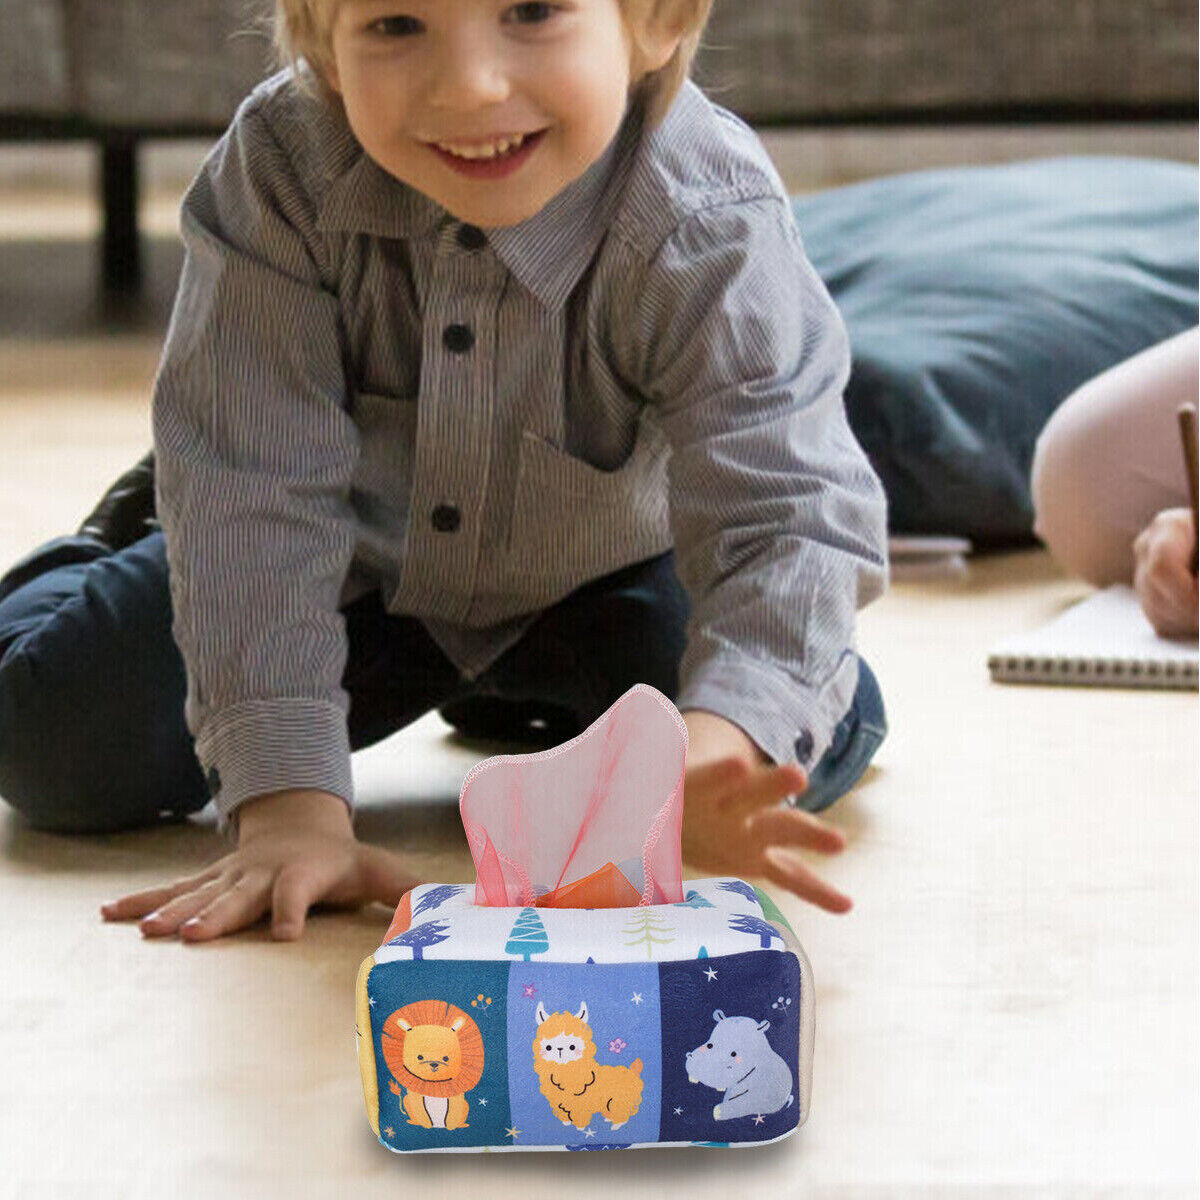 Jouets Bébé - Montessori - Jouets sensoriels - Développement